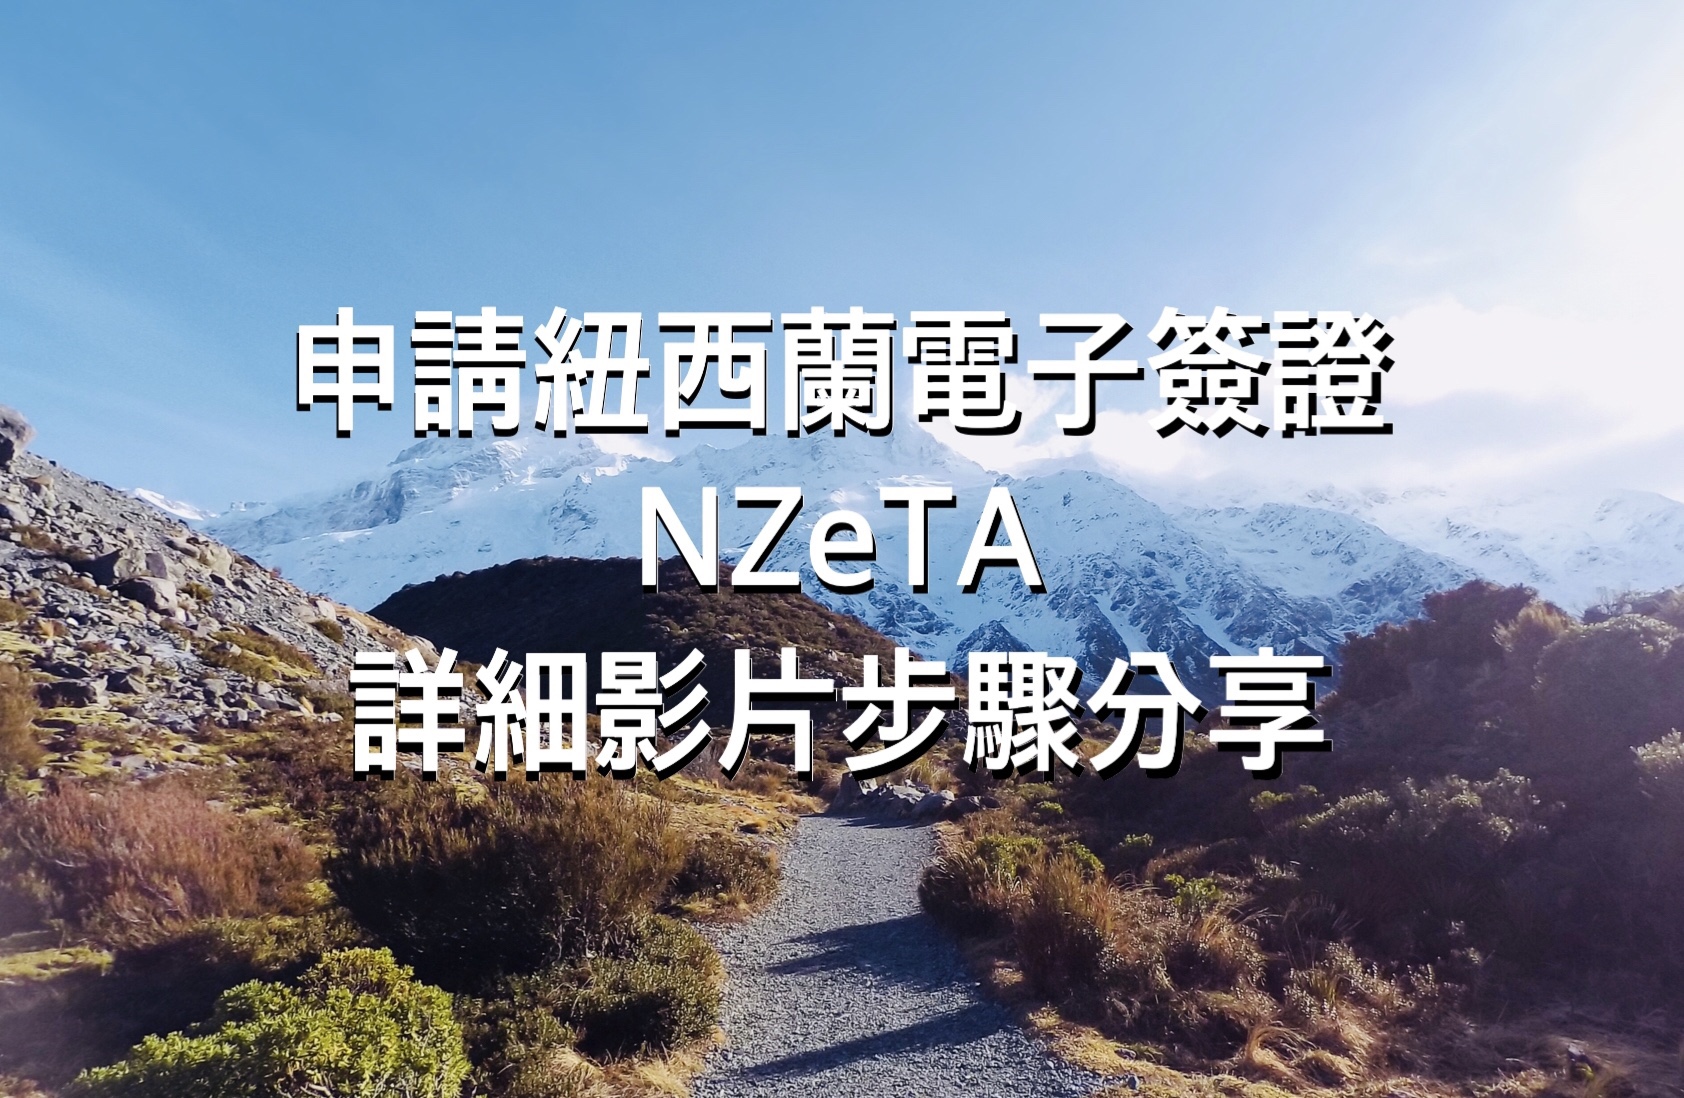 【2021紐西蘭旅遊電子簽證】最便宜申請法，NZeTA旅遊電子簽證